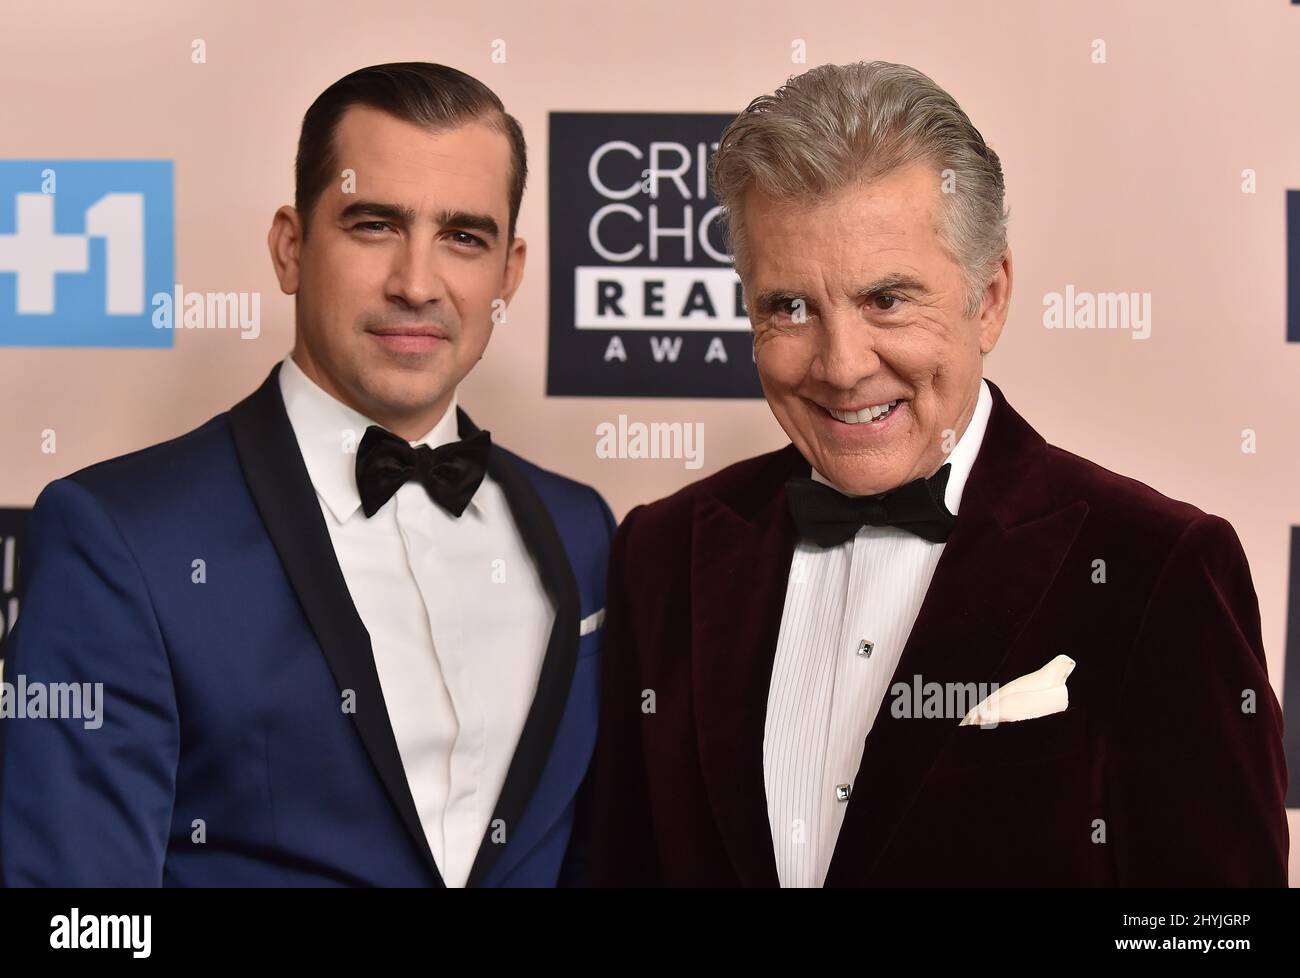 Callahan Walsh and John Walsh at the Critics' Choice Real TV Awards held at the Beverly Hilton Hotel Stock Photo